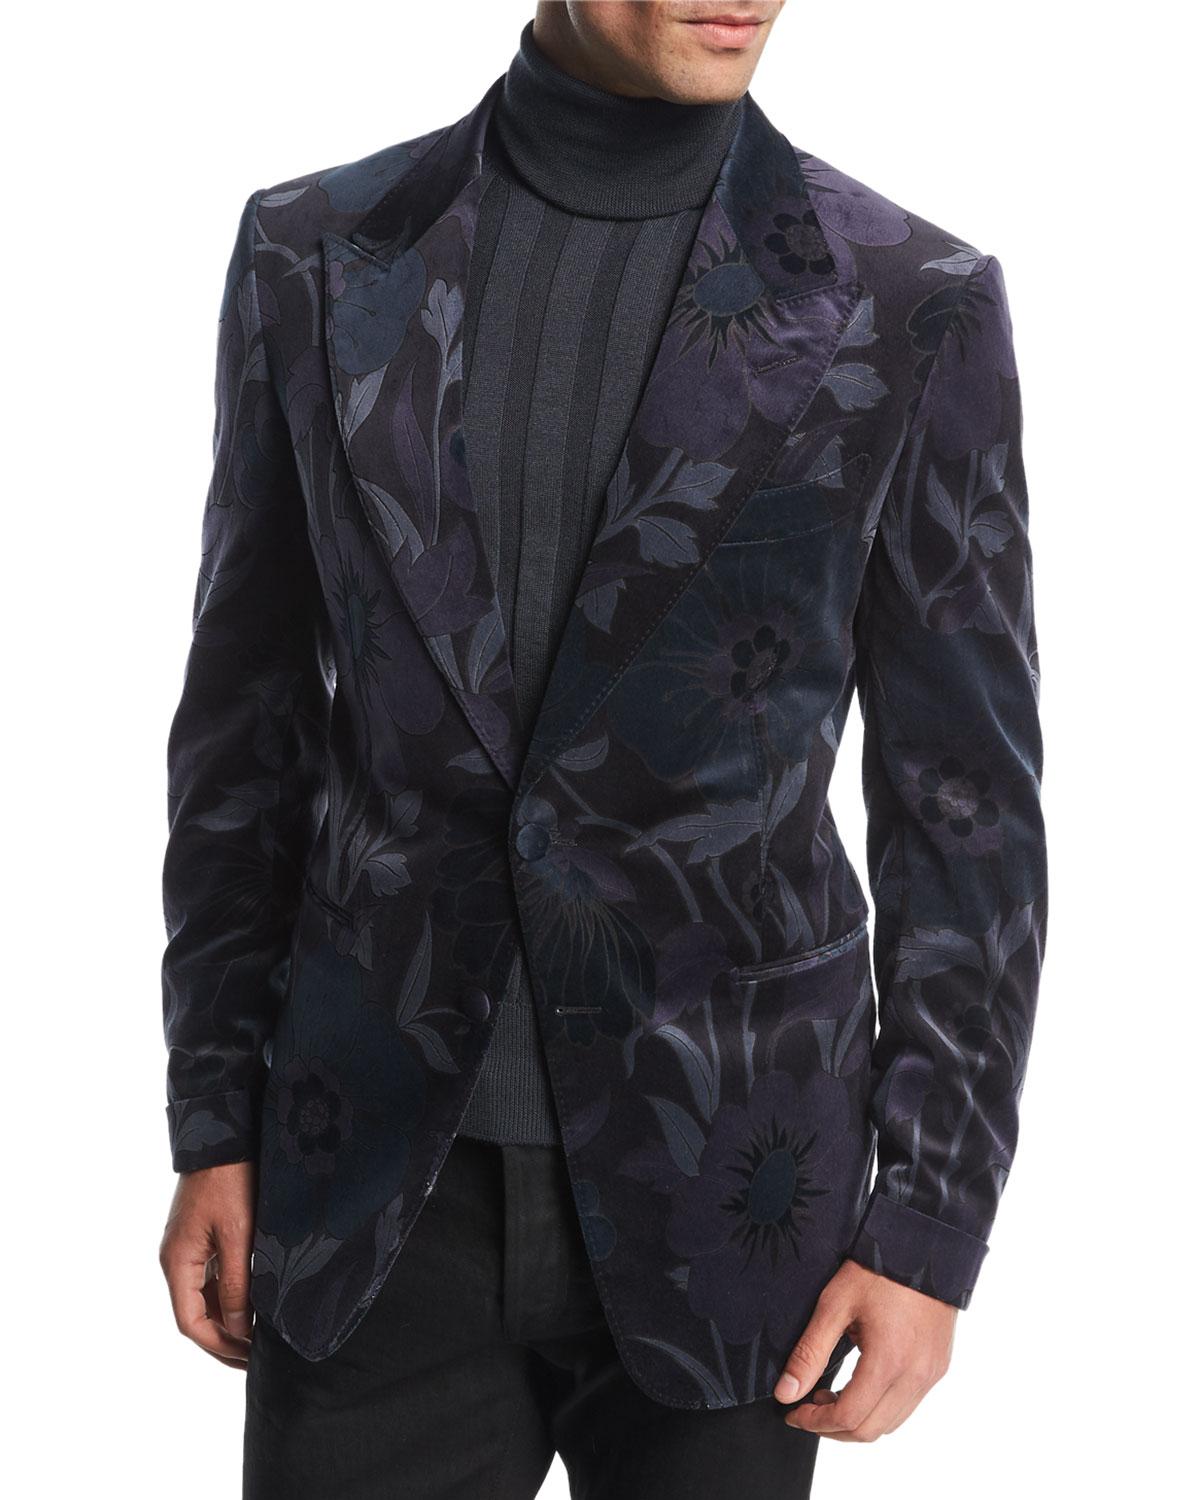 Tom Ford Shelton Base Floral Velvet Dinner Jacket in Blue for Men - Lyst